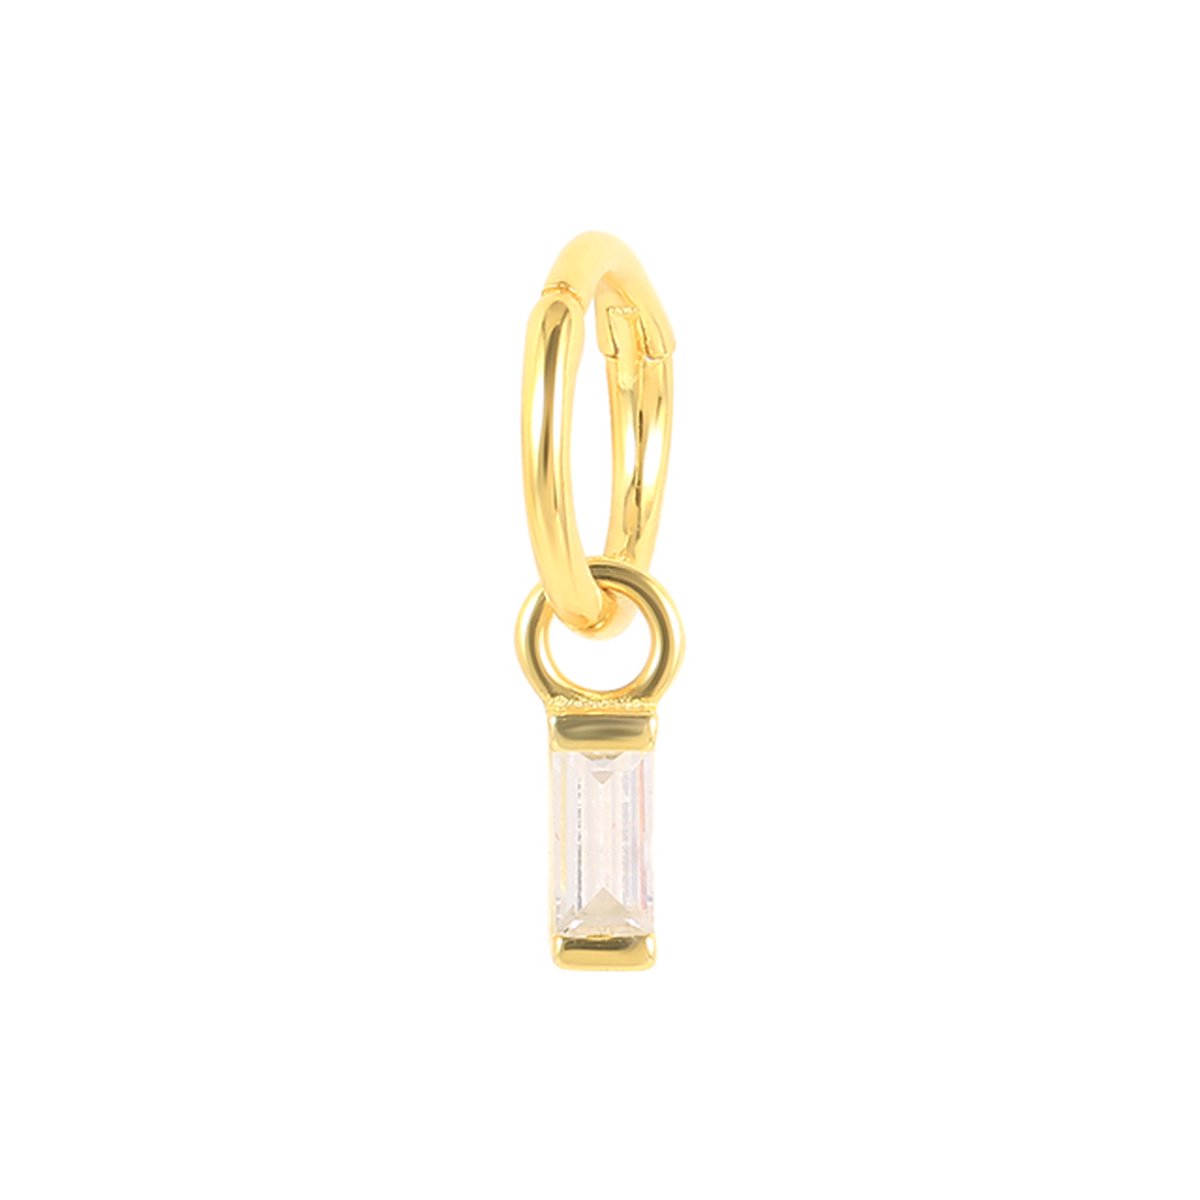 Piercing ringetje met balkje hangertje gold plated 1.2x6